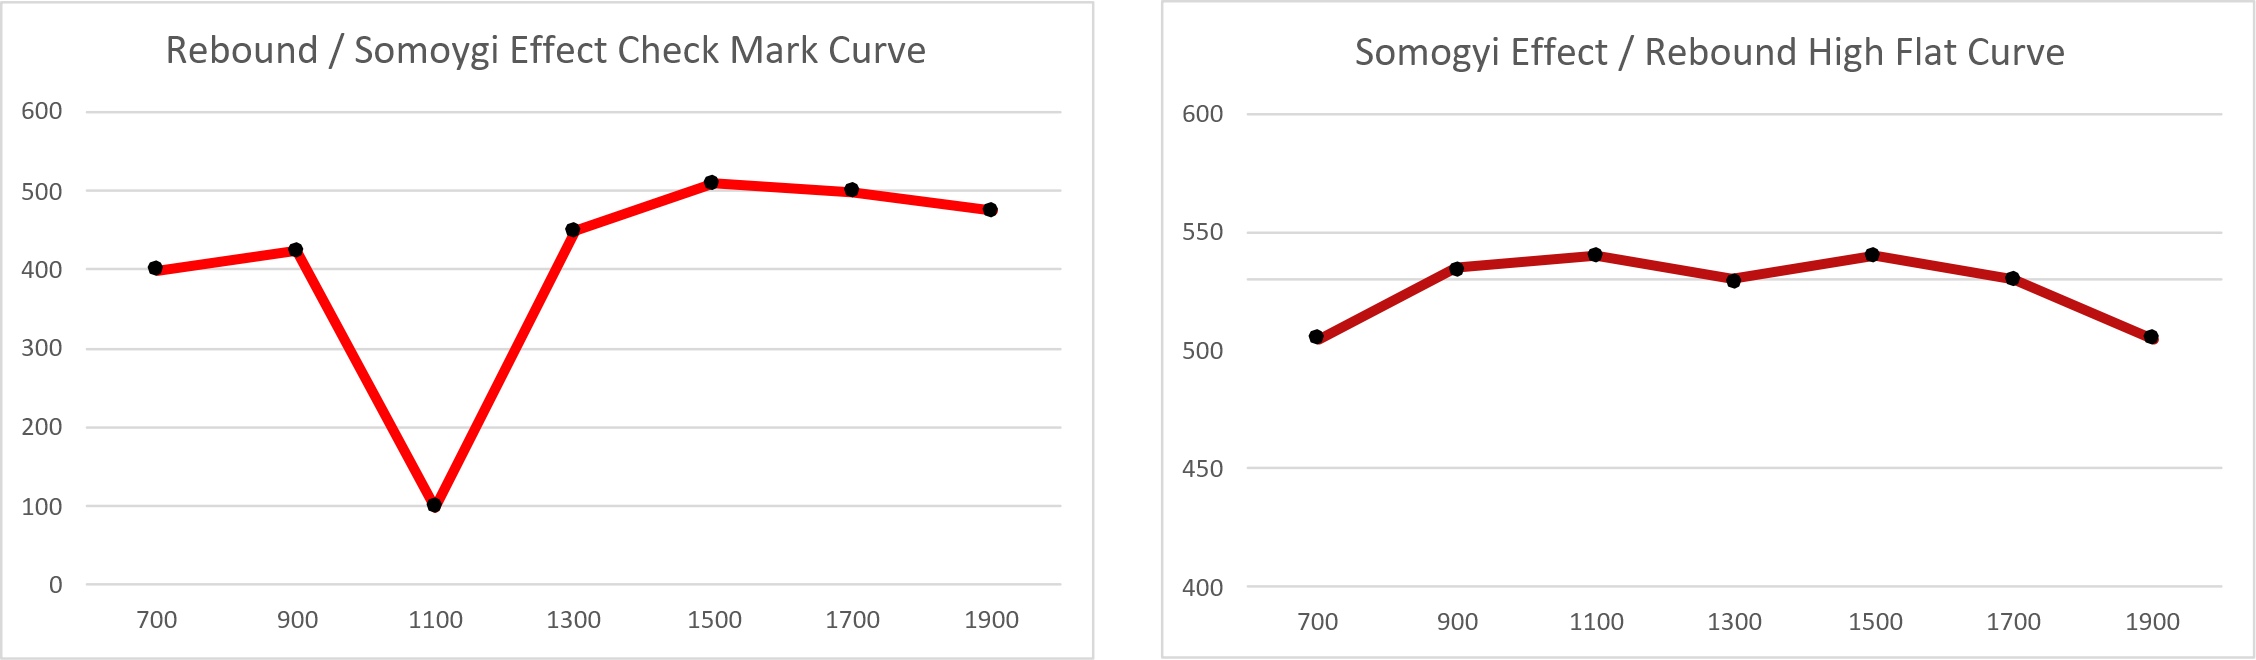 Somogyi Effect / Rebound Curves